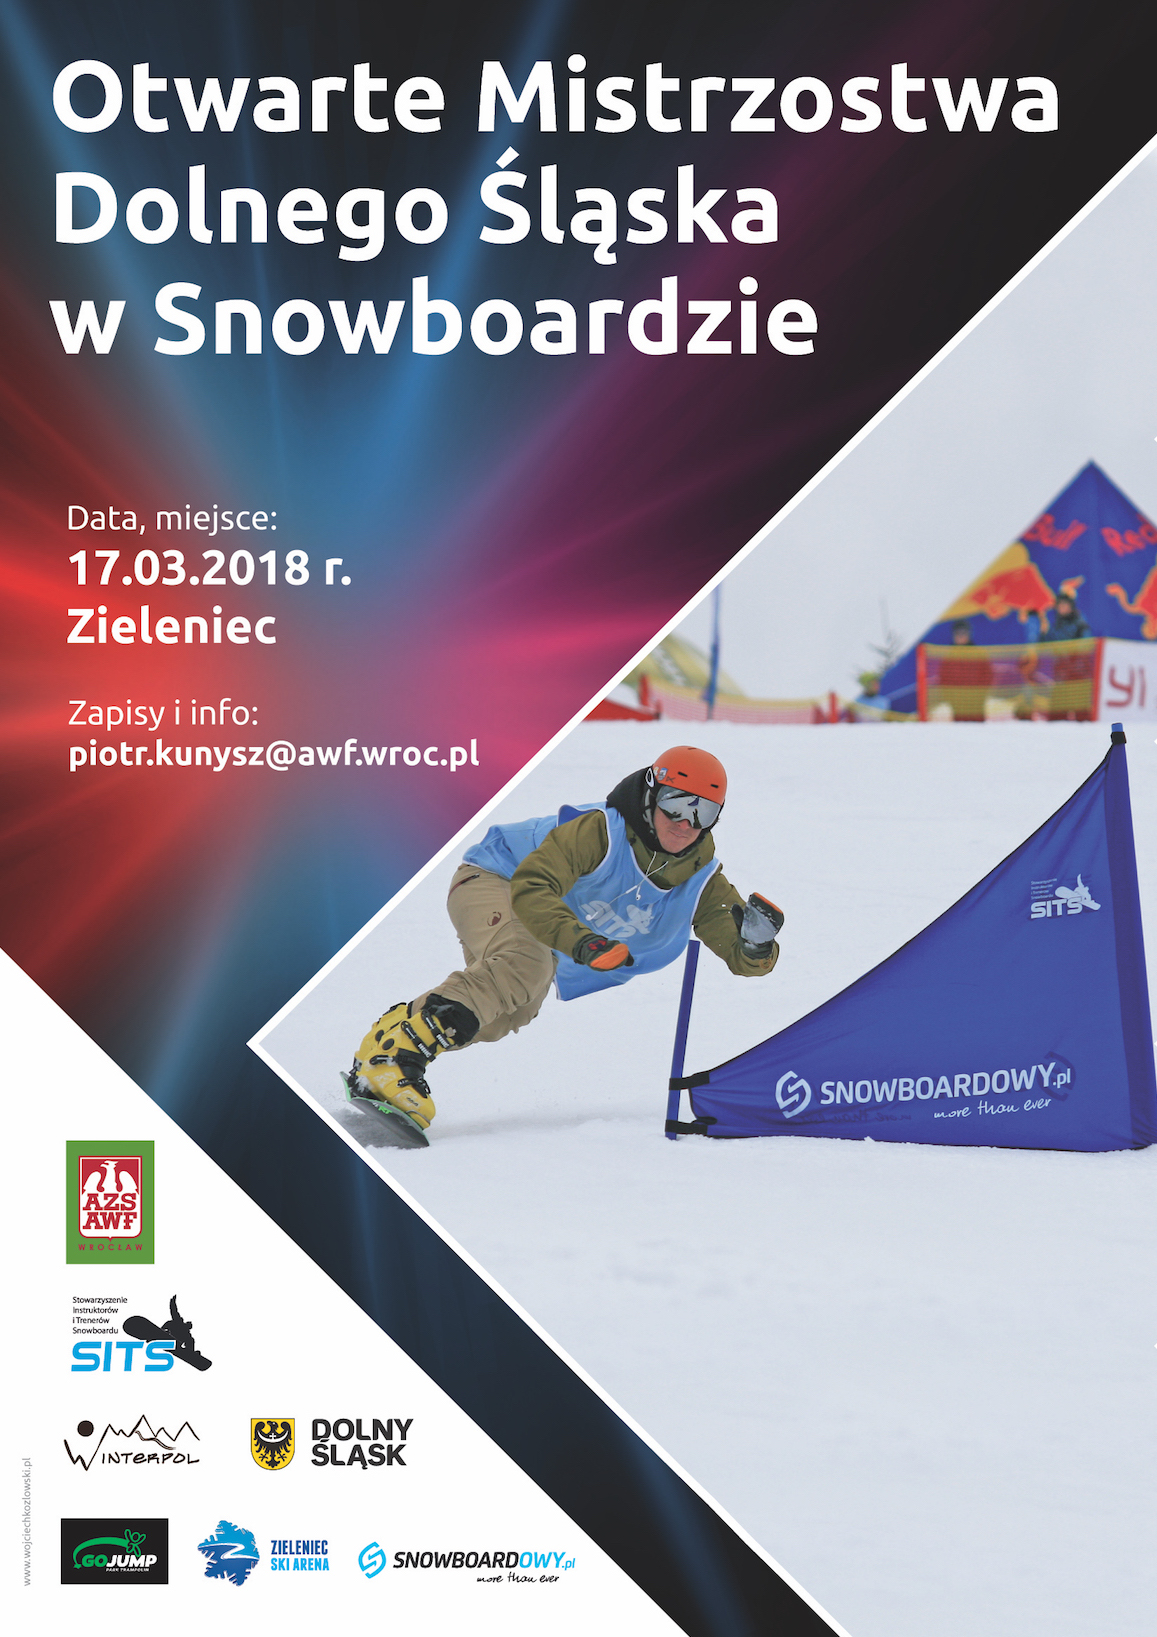 Mistrzostwa Dolnego Śląska w snowboardzie